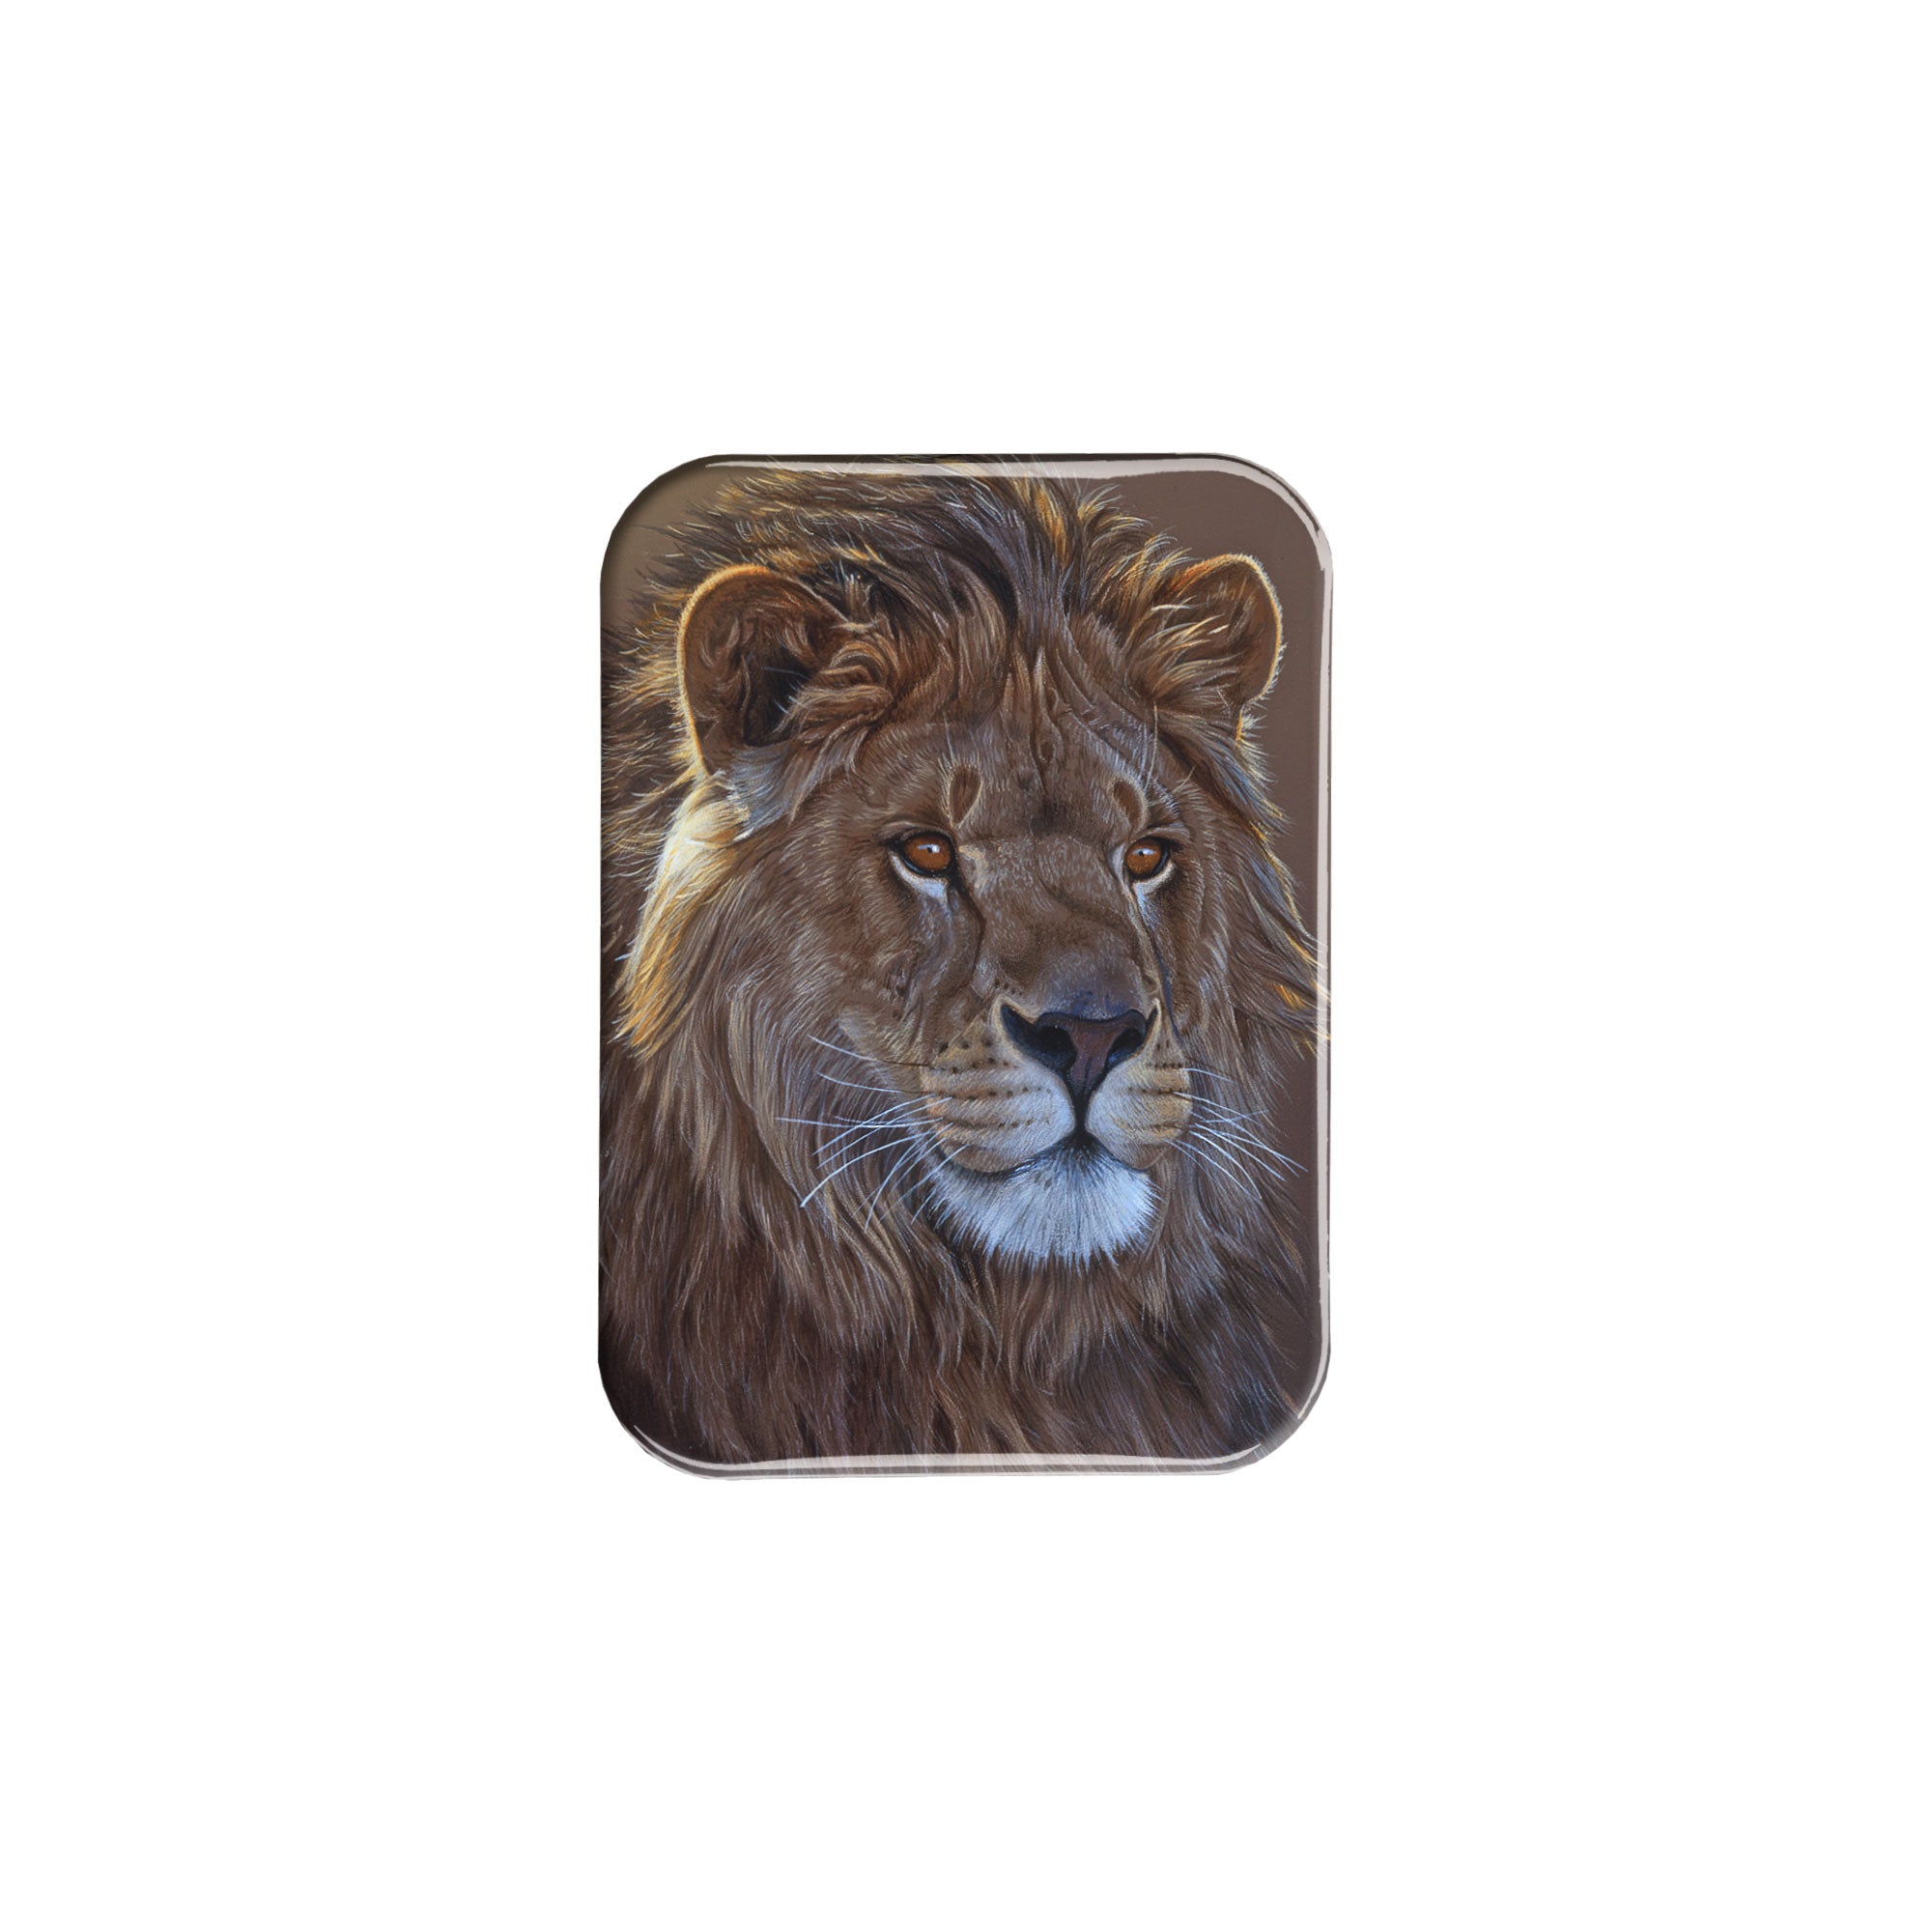 "Lion Portrait" - 2.5" X 3.5" Rectangle Fridge Magnets